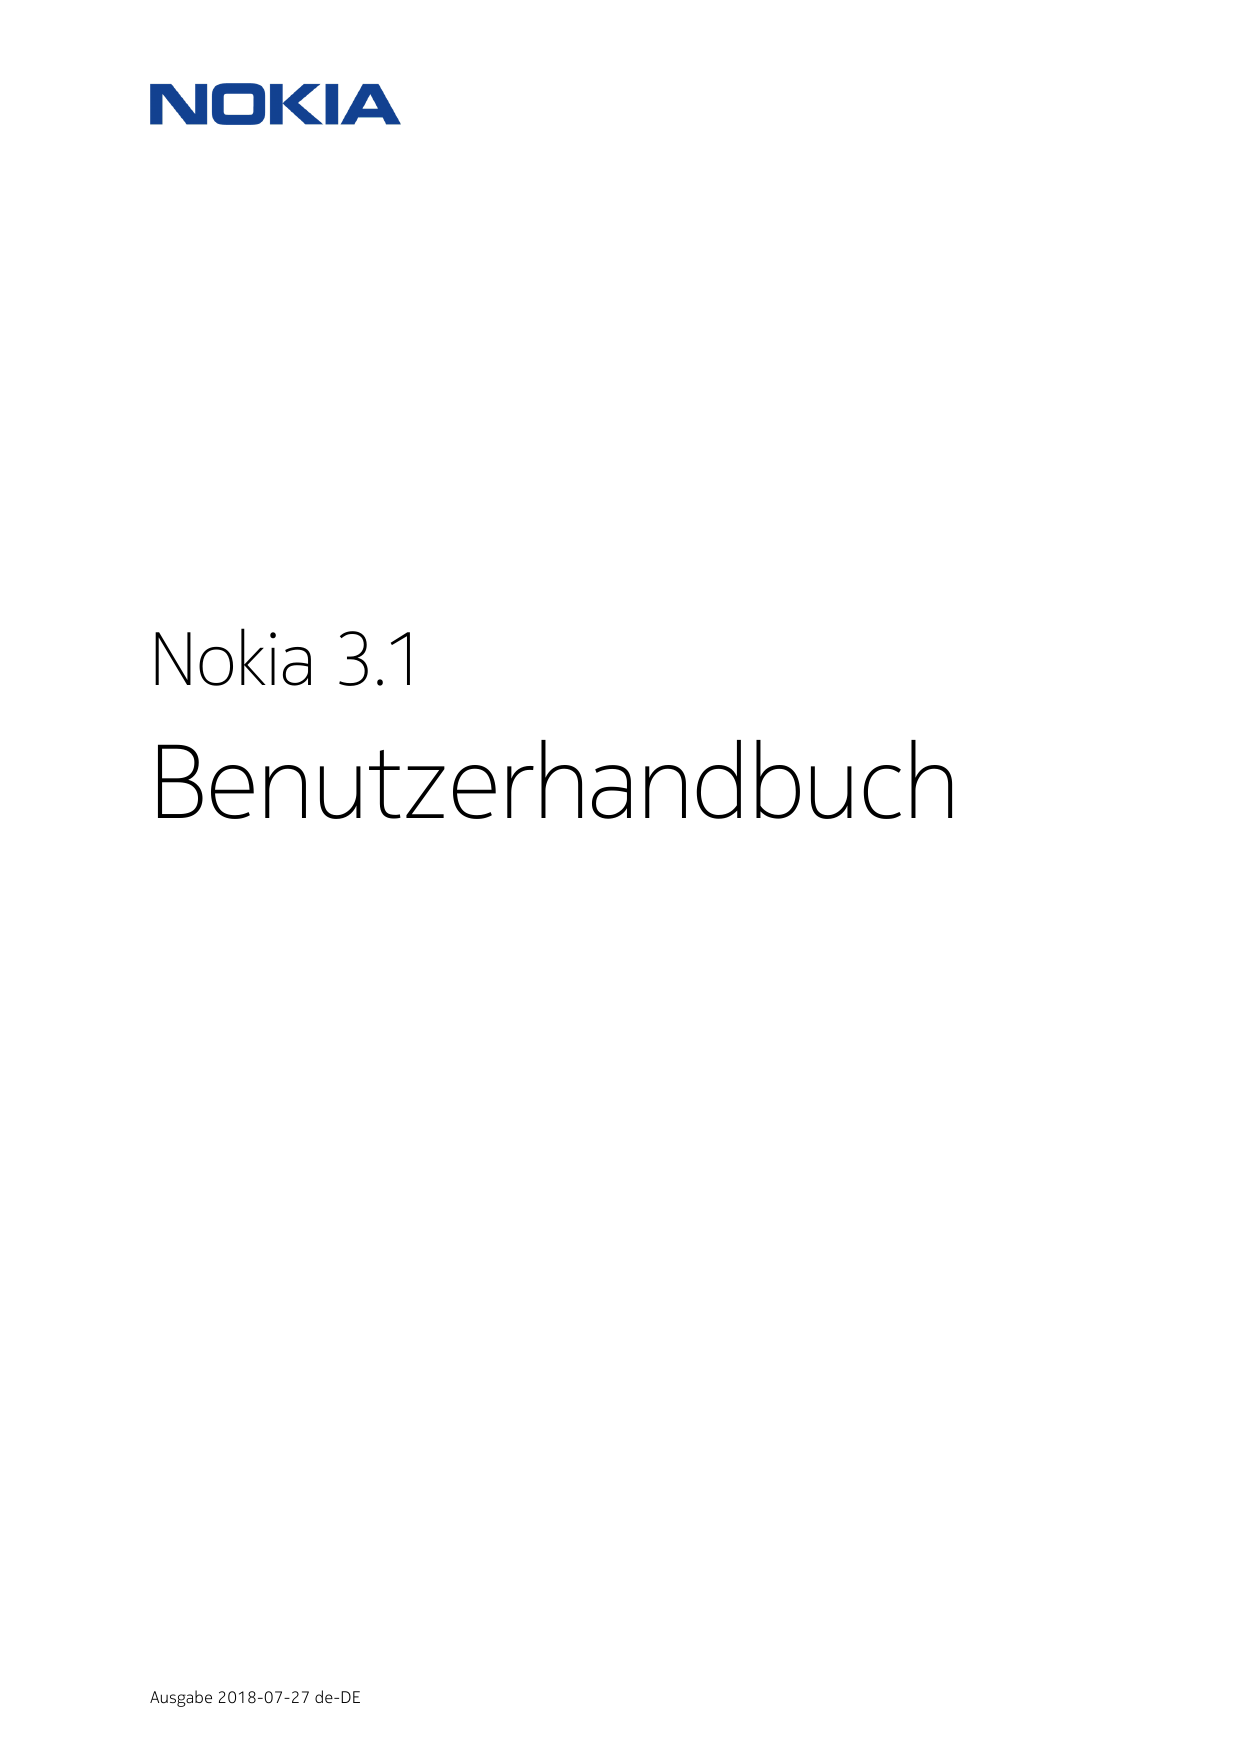 Nokia 3.1BenutzerhandbuchAusgabe 2018-07-27 de-DE